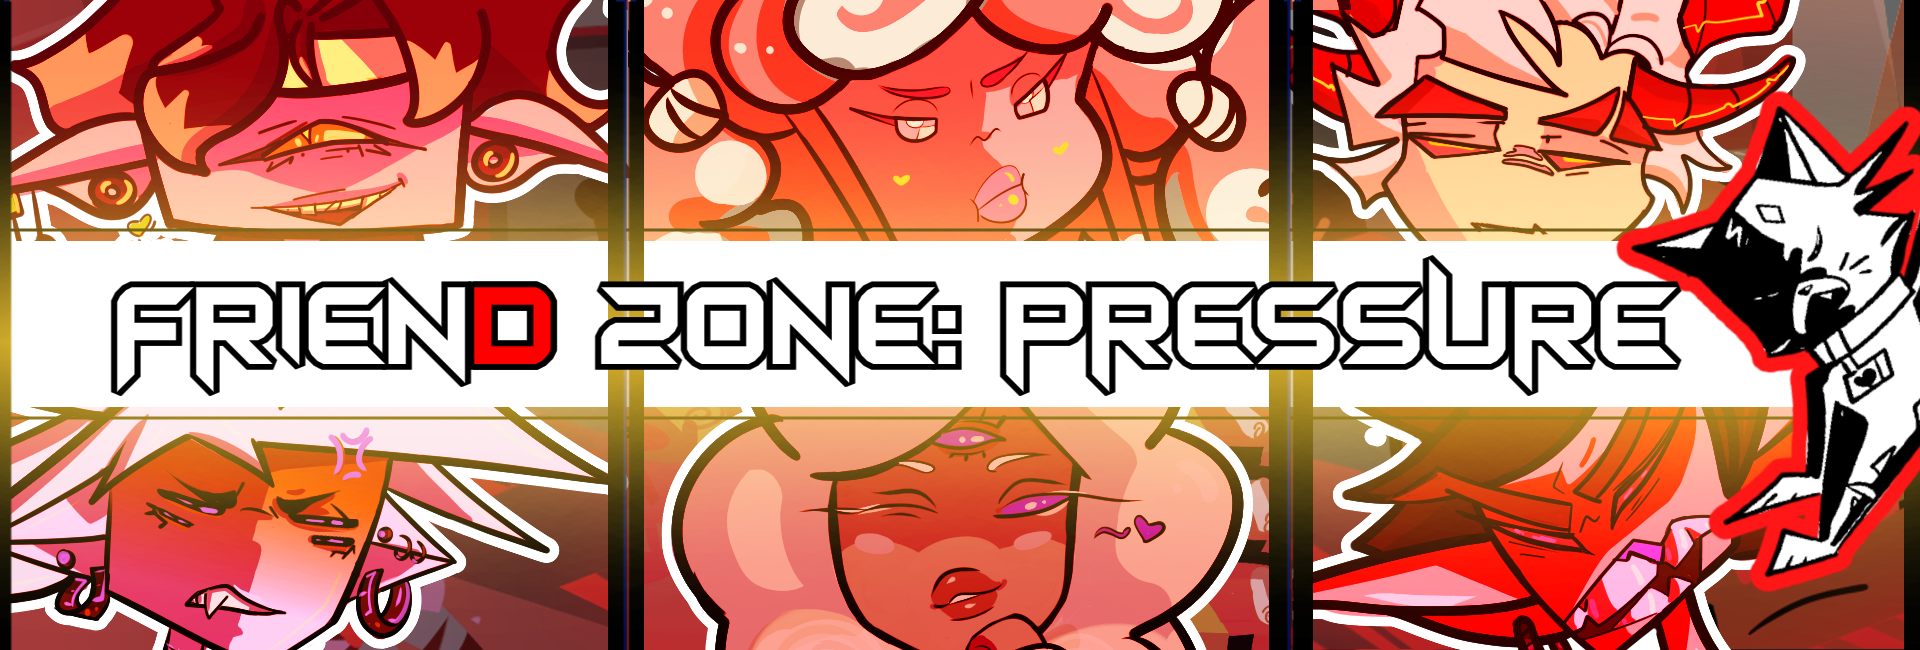 Friend Zone 4: Pressure